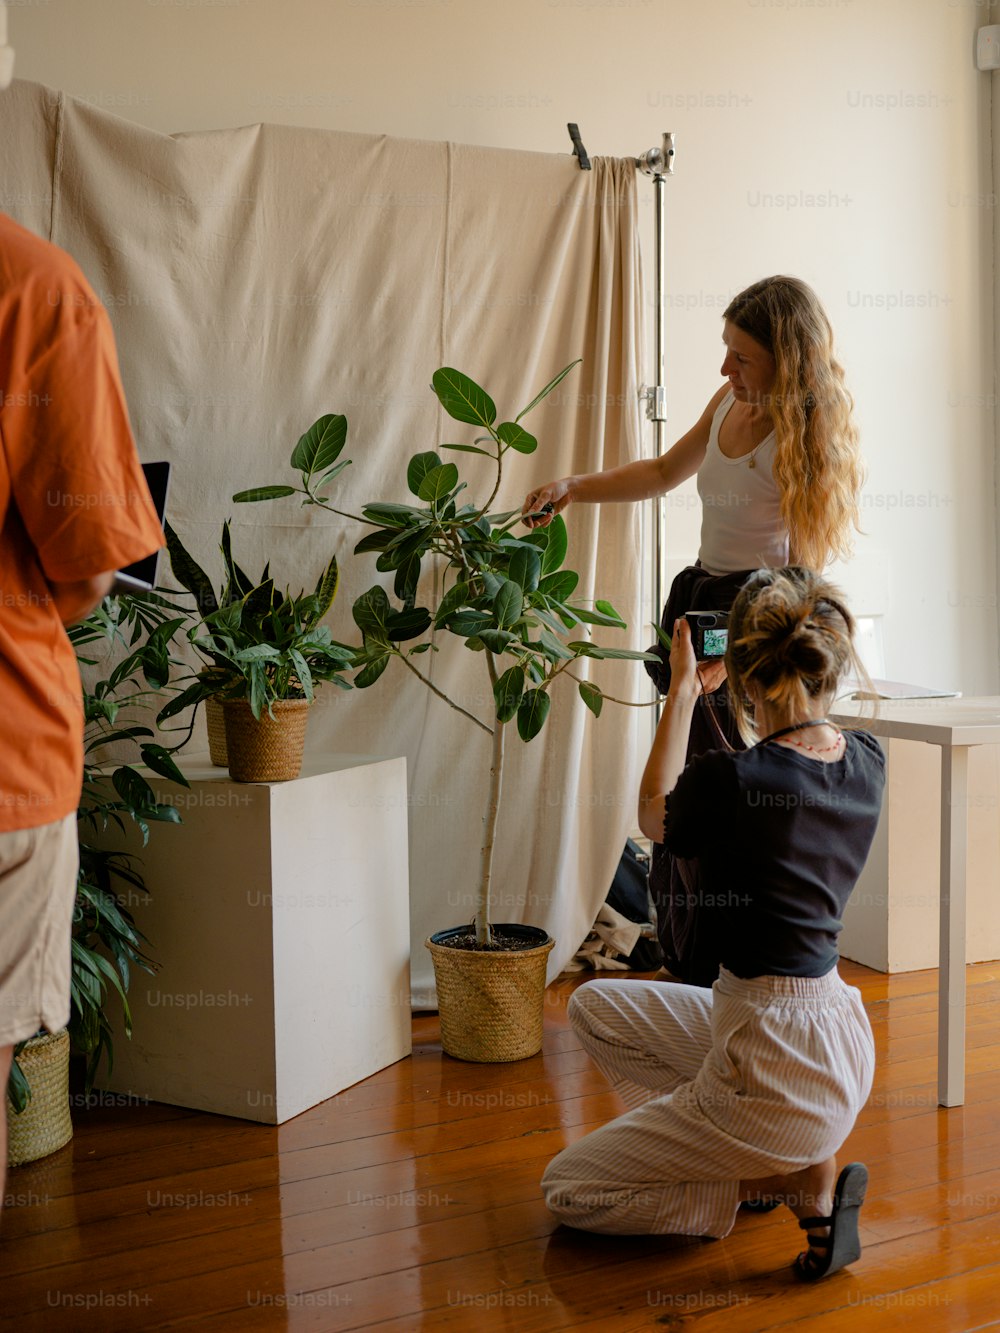 Una mujer está tomando una foto de una planta en maceta